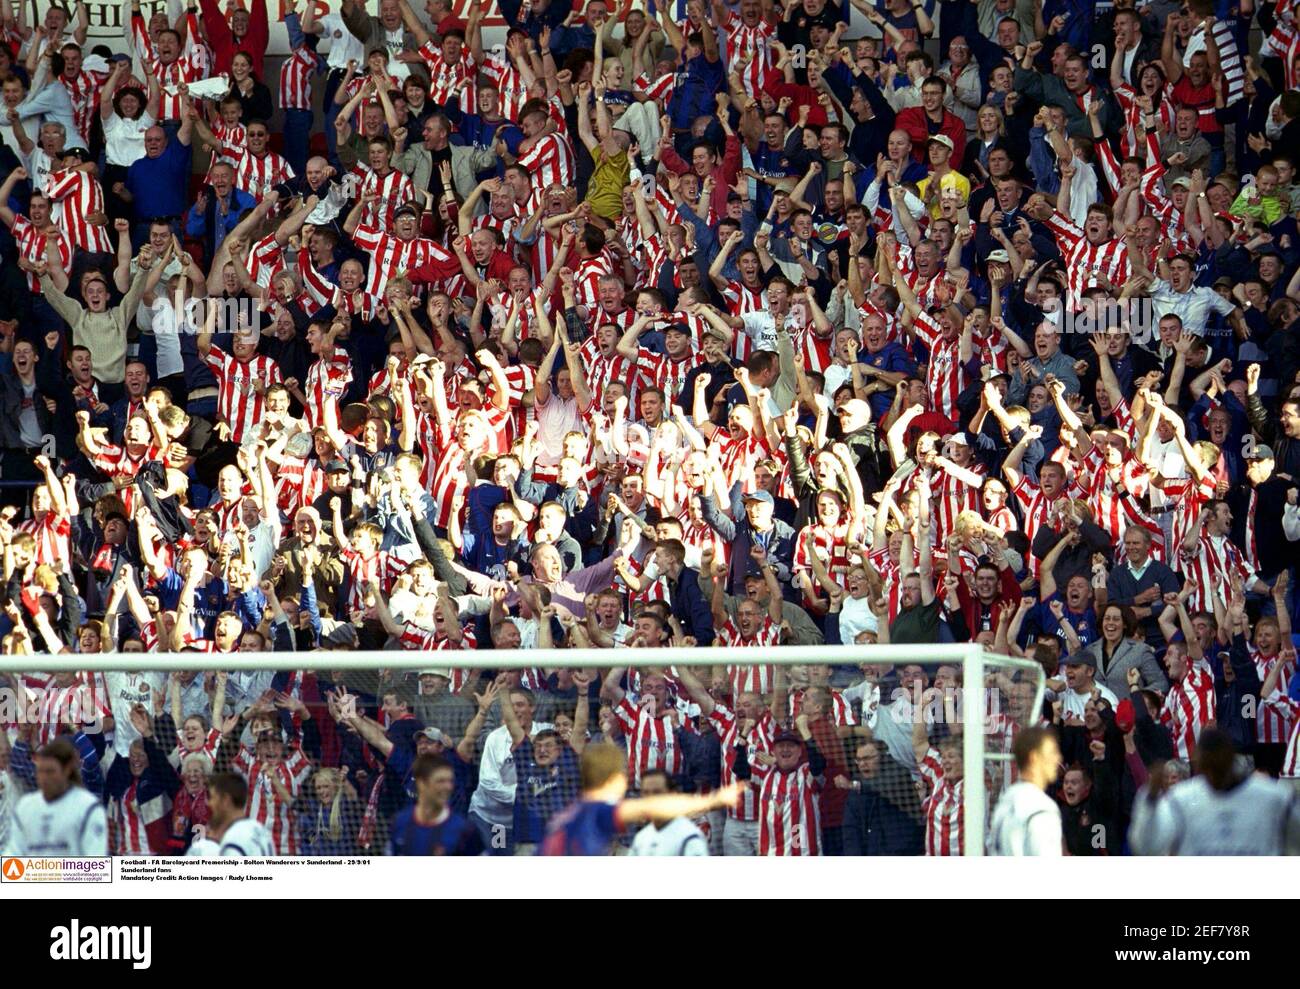 Fútbol - FA Barclaycard Premeriship - Bolton Wanderers v Sunderland - 29/9/01 fanáticos de Sunderland crédito obligatorio: Imágenes de acción / Rudy Lhomme Foto de stock